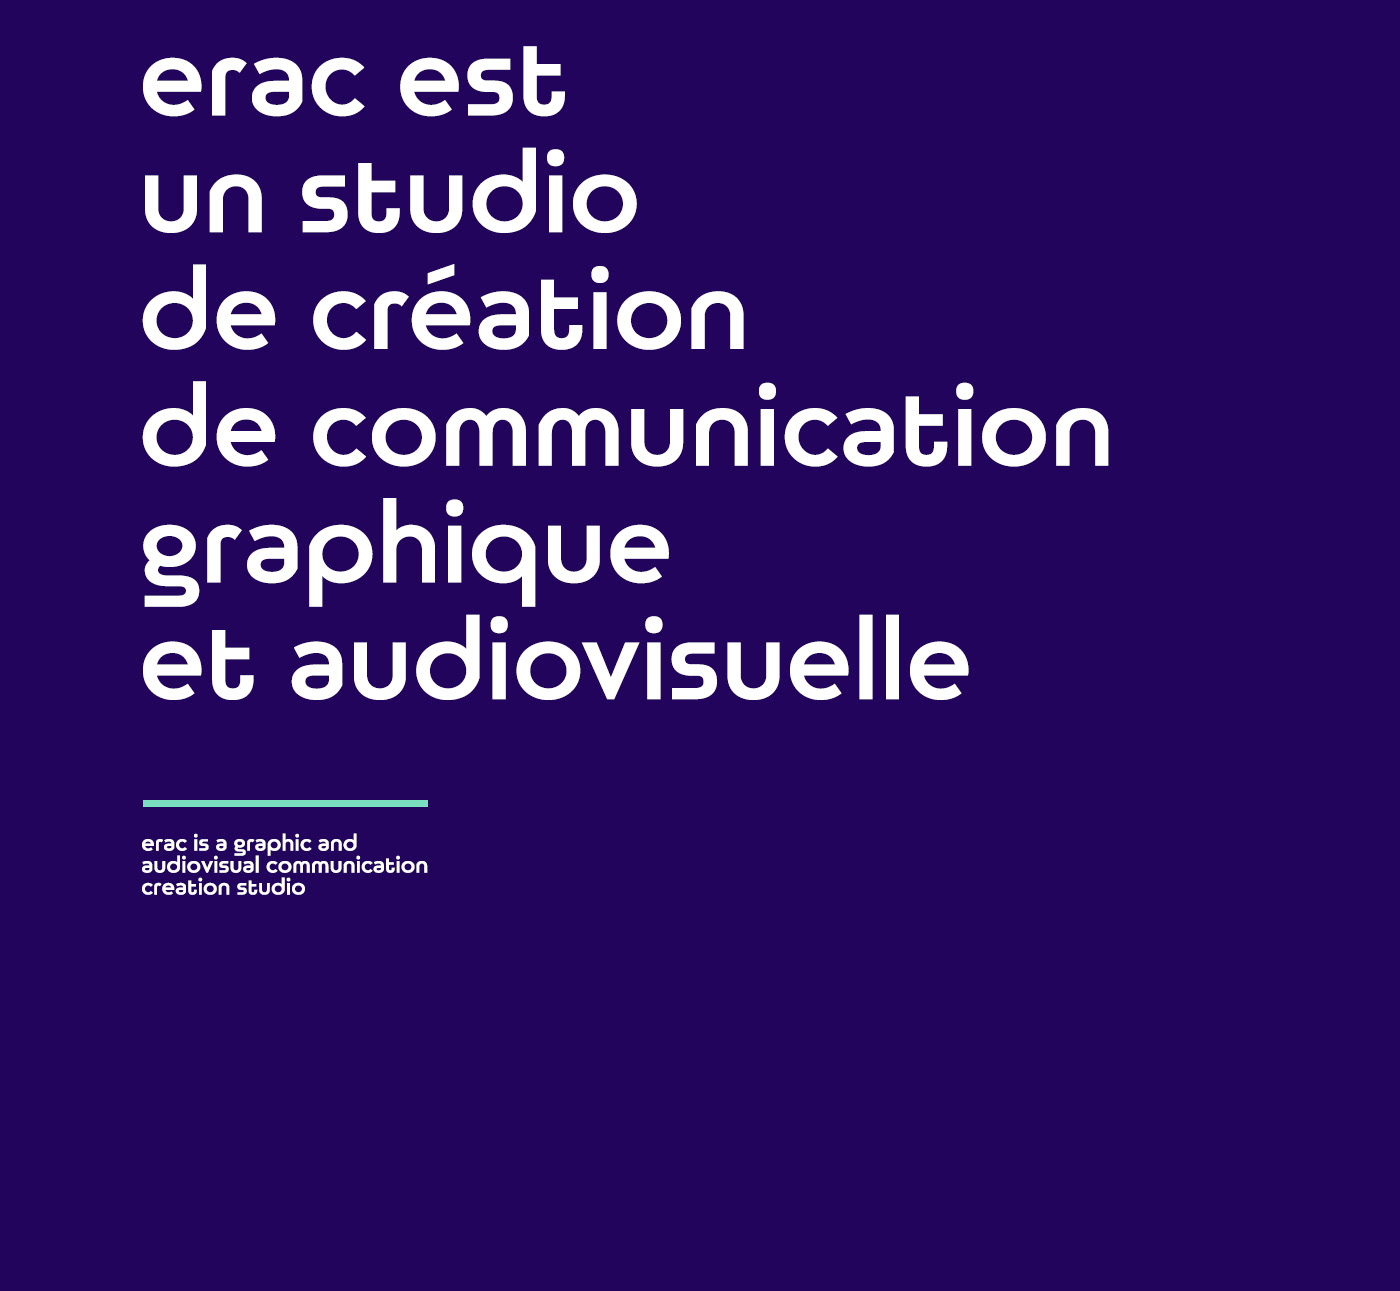 erac est un studio de création de communication graphique et audiovisuelle